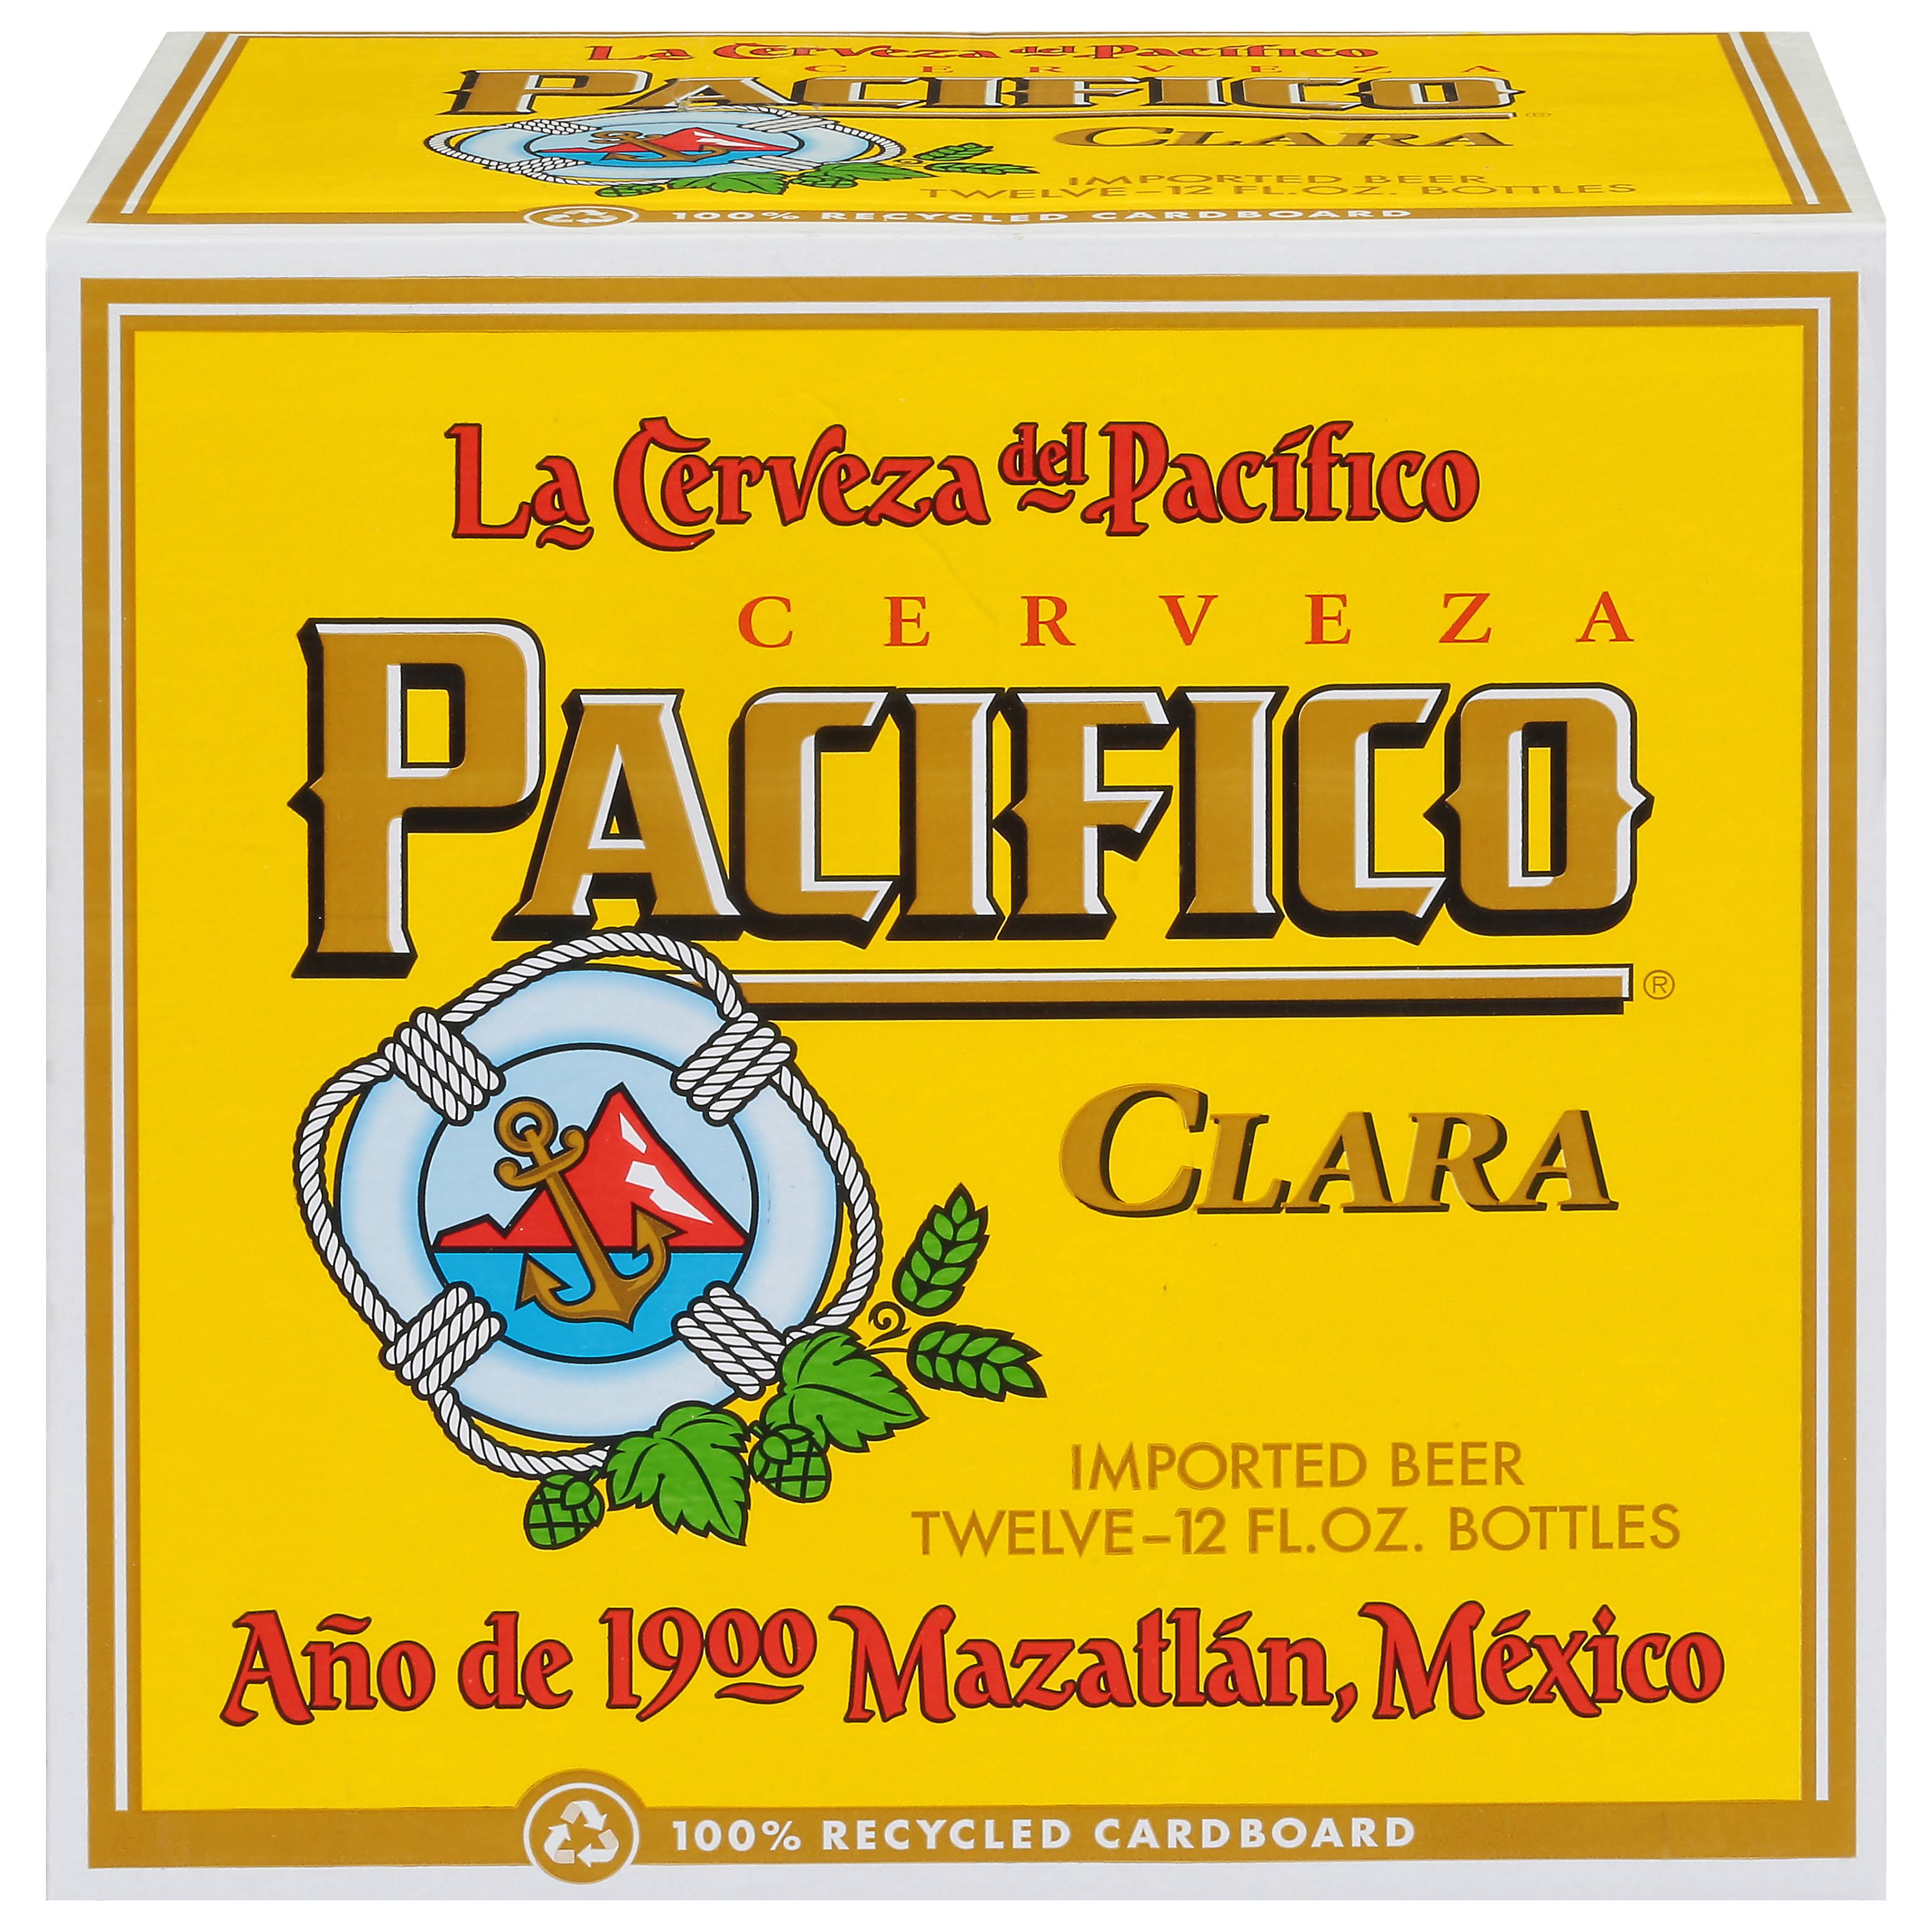 Cerveceria Del Pacifico Mexican Beer - 12 Bottles